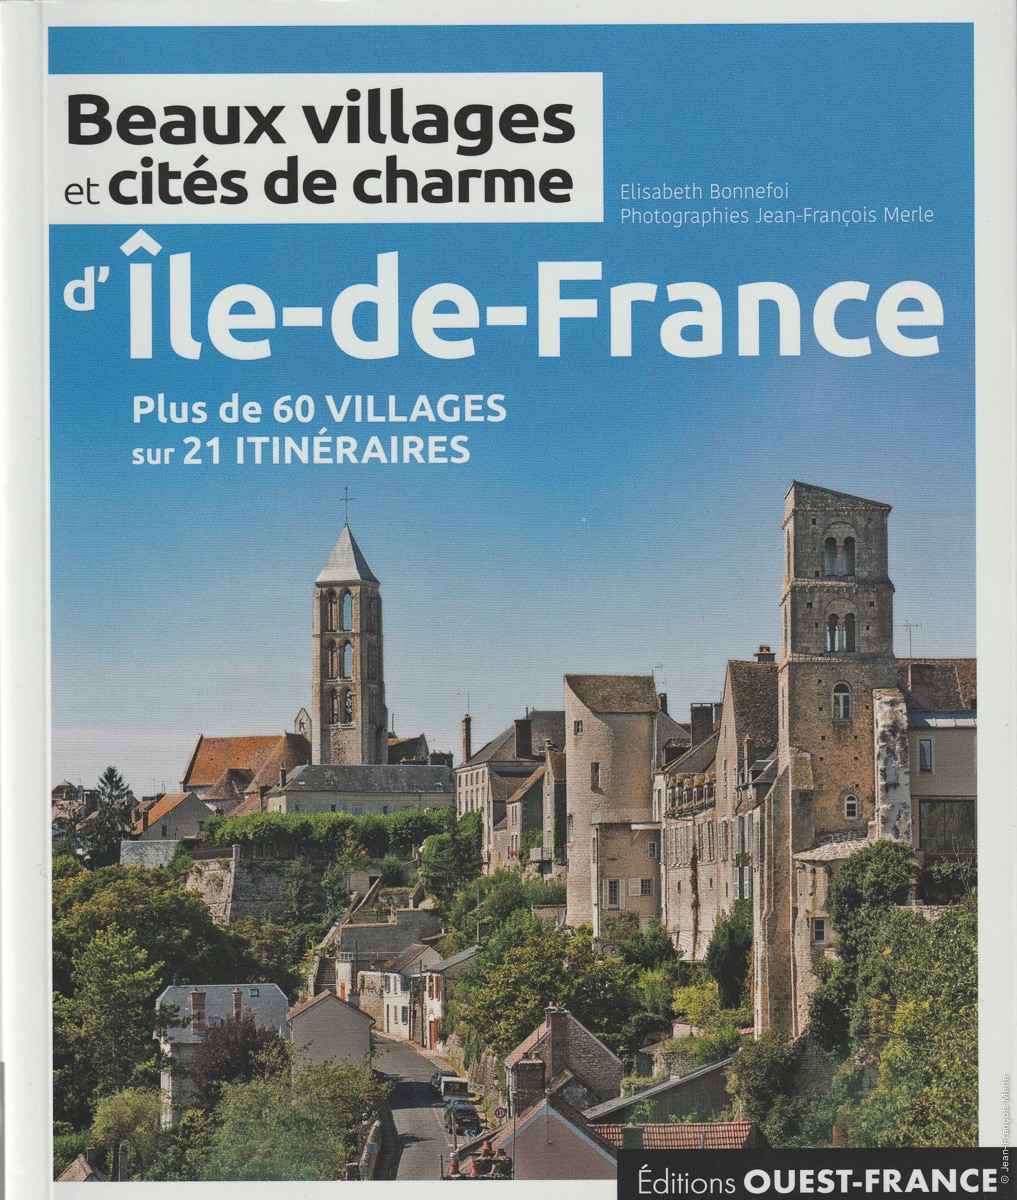 Photographe de tourisme : parution du livre « Beaux villages et cités de charmes d’Ile-de-France »